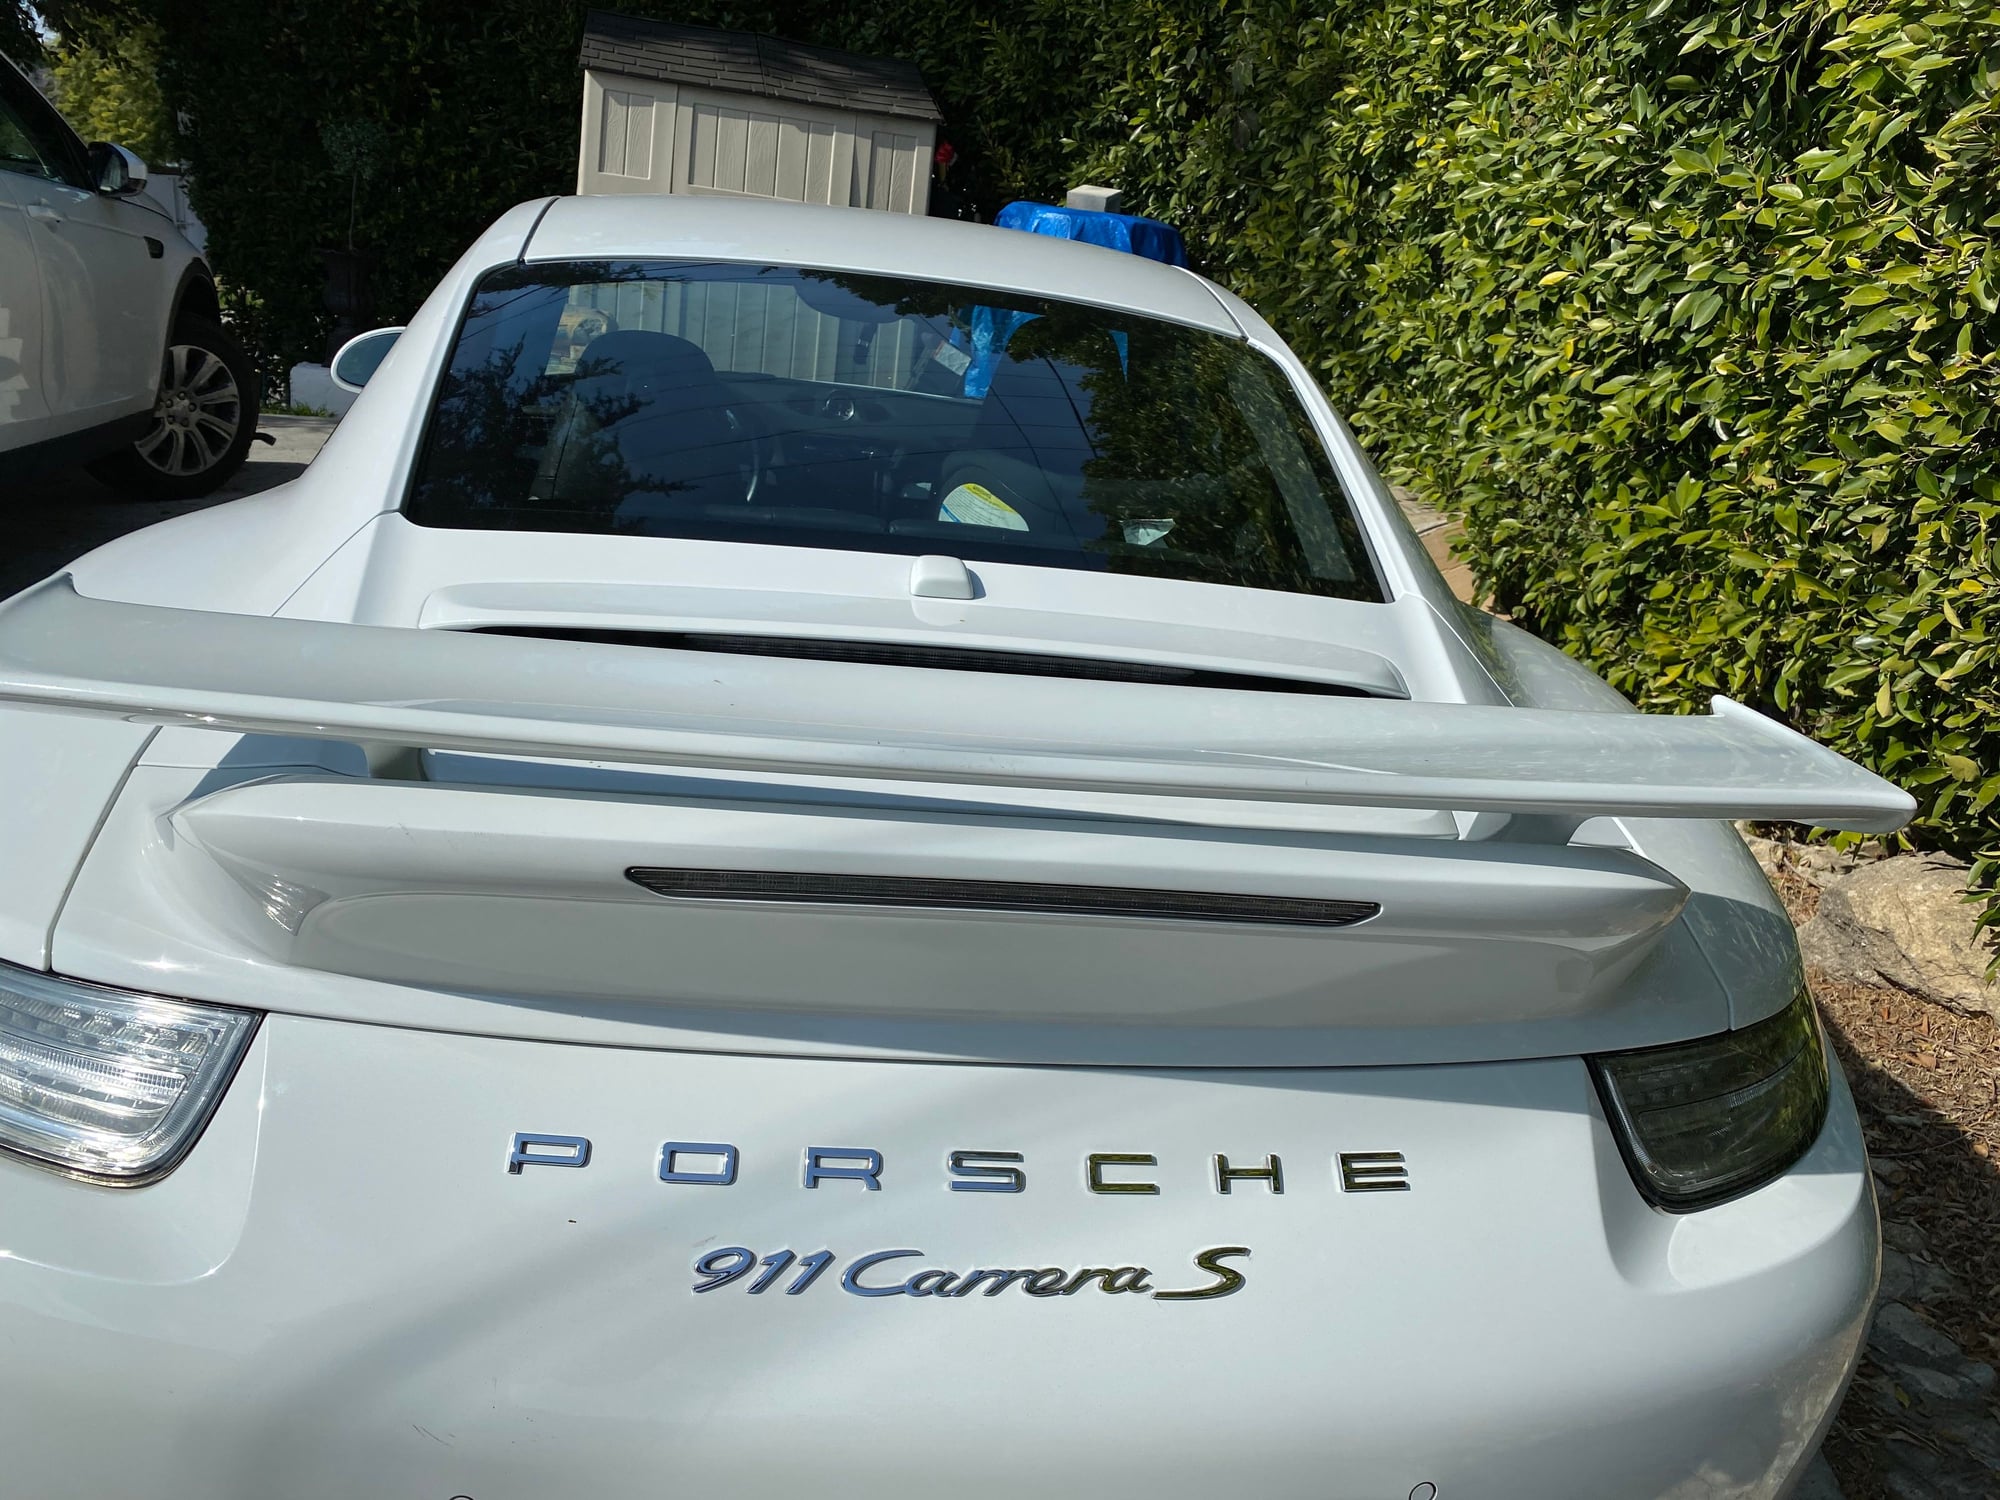 Exterior Body Parts - FS: Porsche aero kit spoiler 991.1 - Used - 2013 to 2016 Porsche 911 - La Crescenta, CA 91214, United States